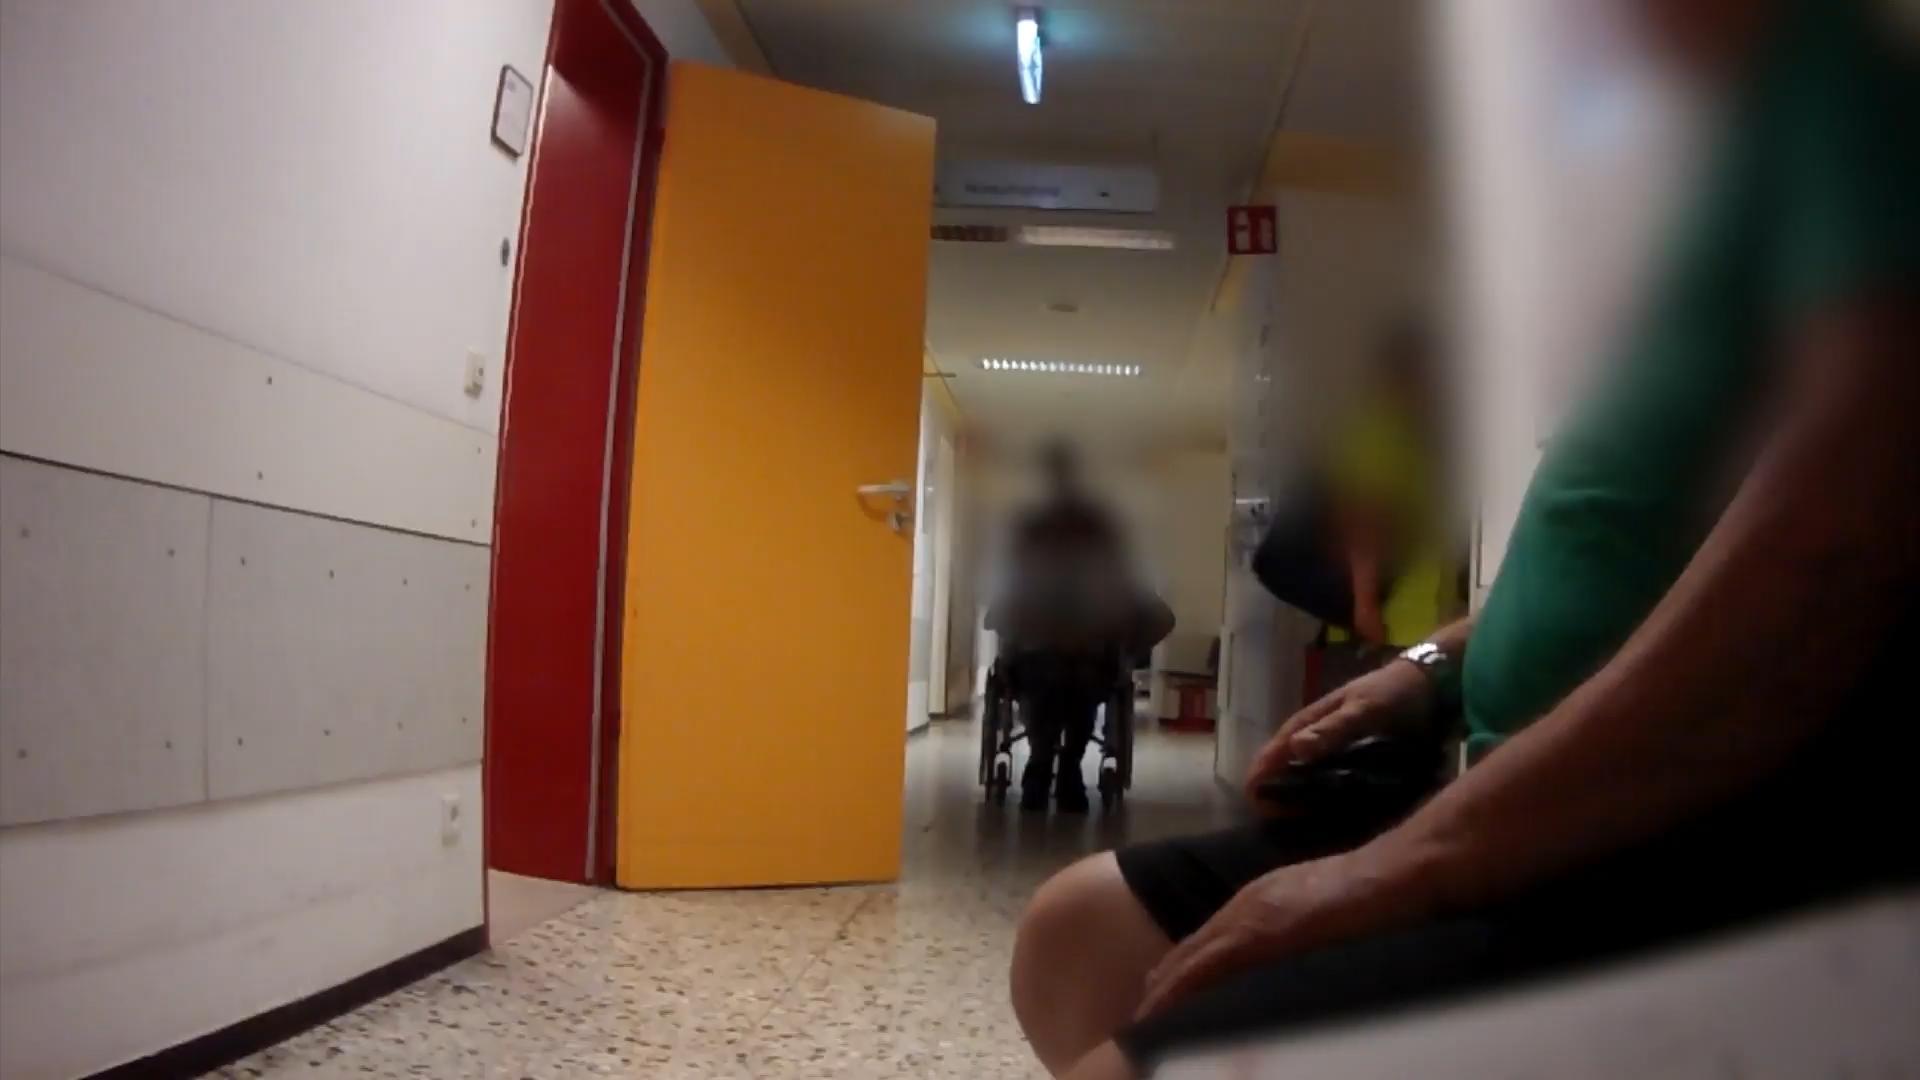 DRK Neuwied Hospital: espellere il paziente nonostante il pericolo? "Squadra Wallraff" Sotto copertura con la Croce Rossa